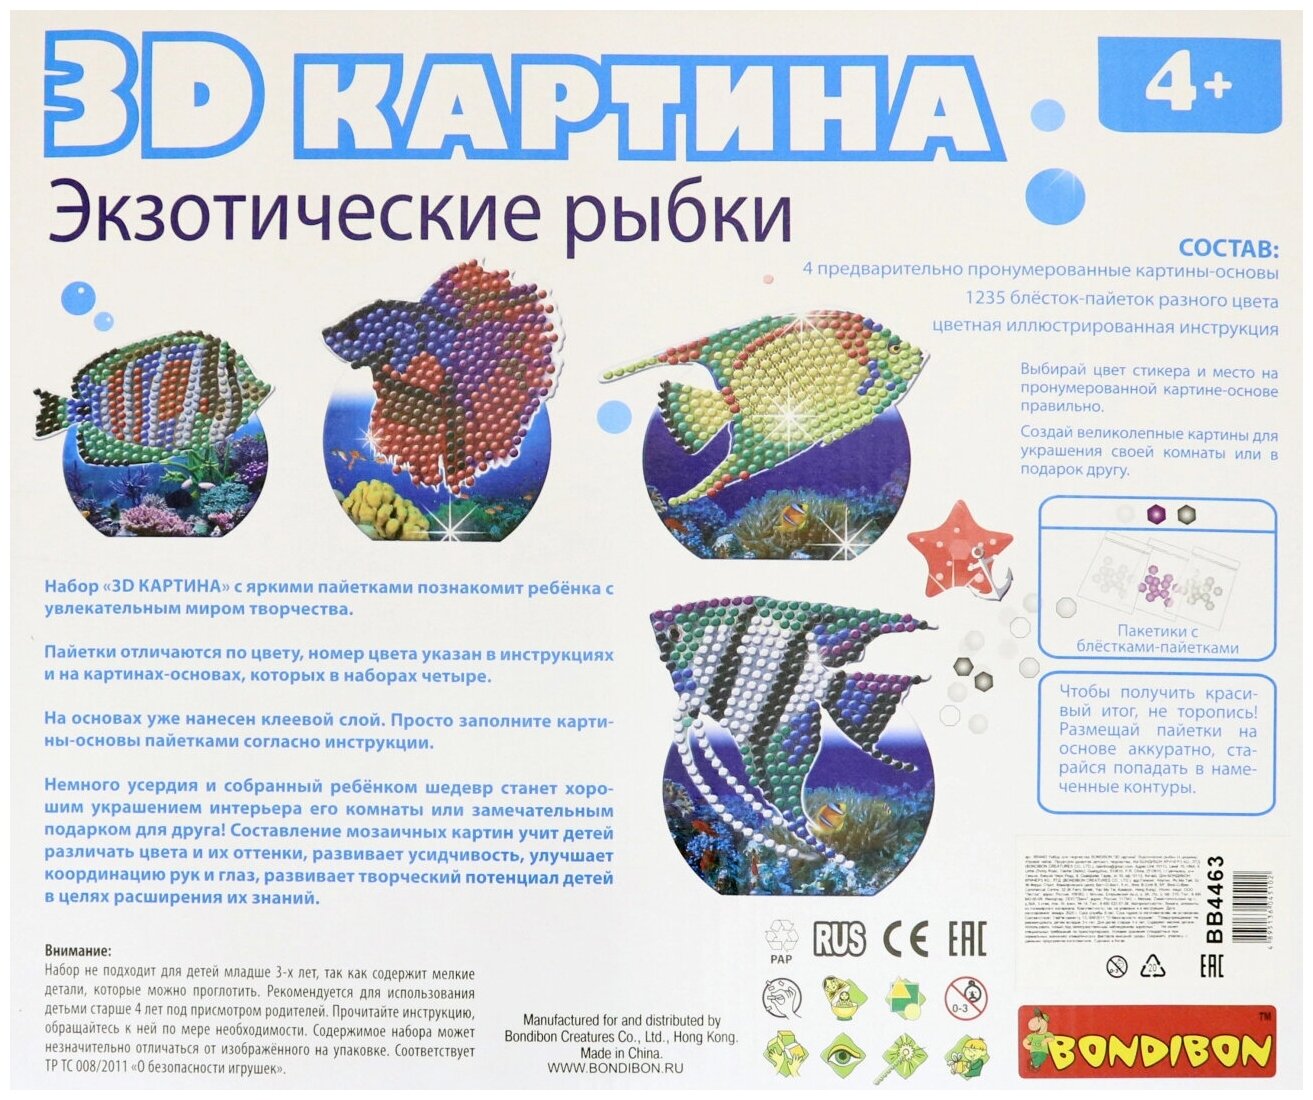 3D картина "Экзотические рыбки" 4 дизайна (ВВ4463) Bondibon - фото №10